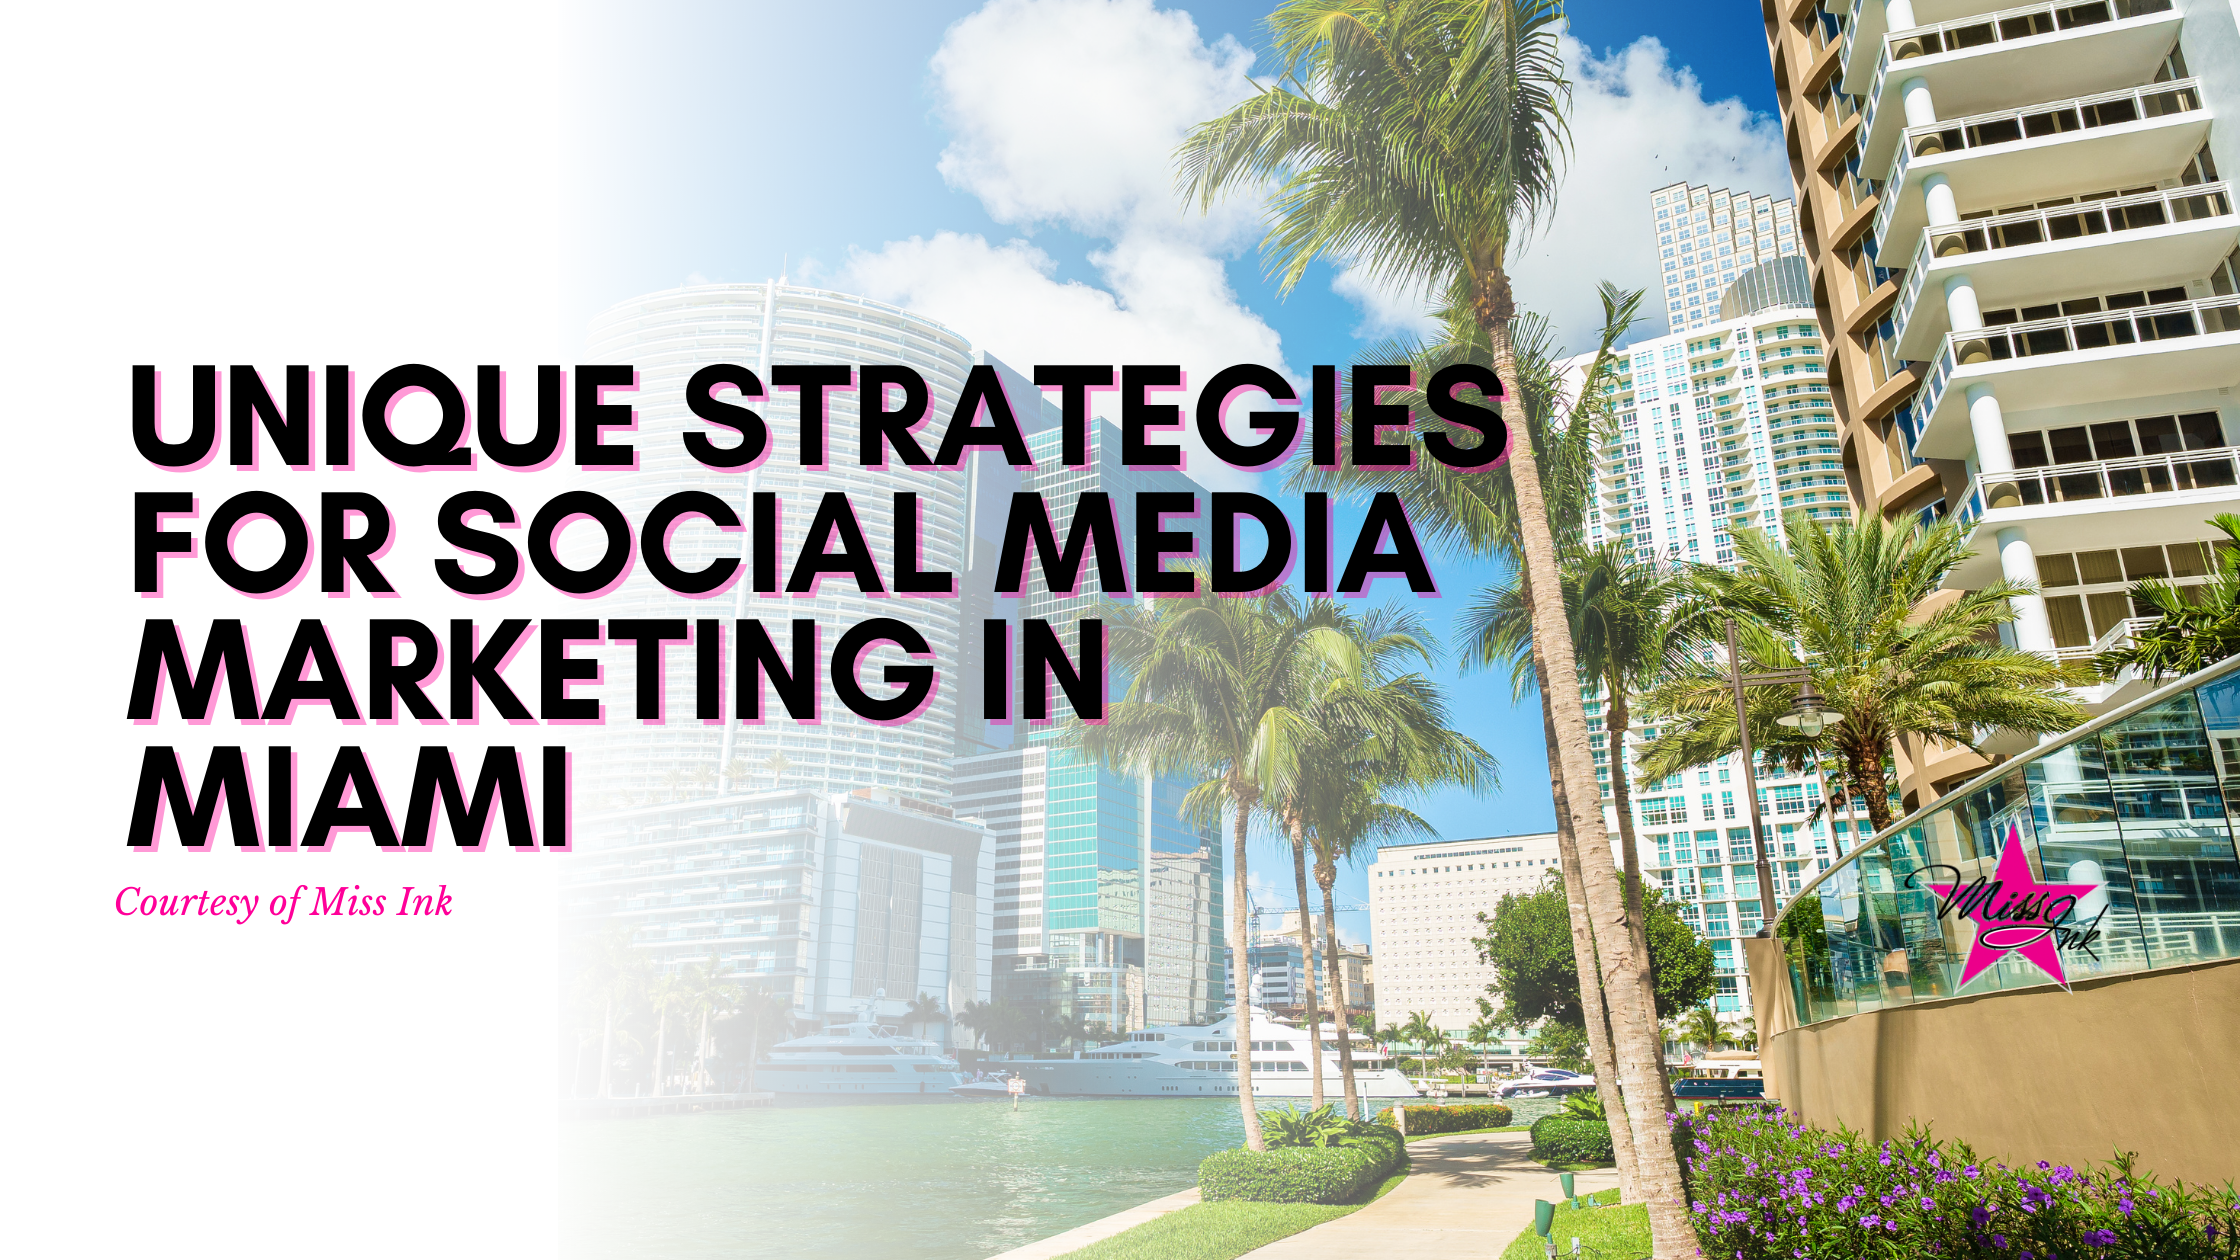 Unique Strategies for Social Media Marketing in Miami